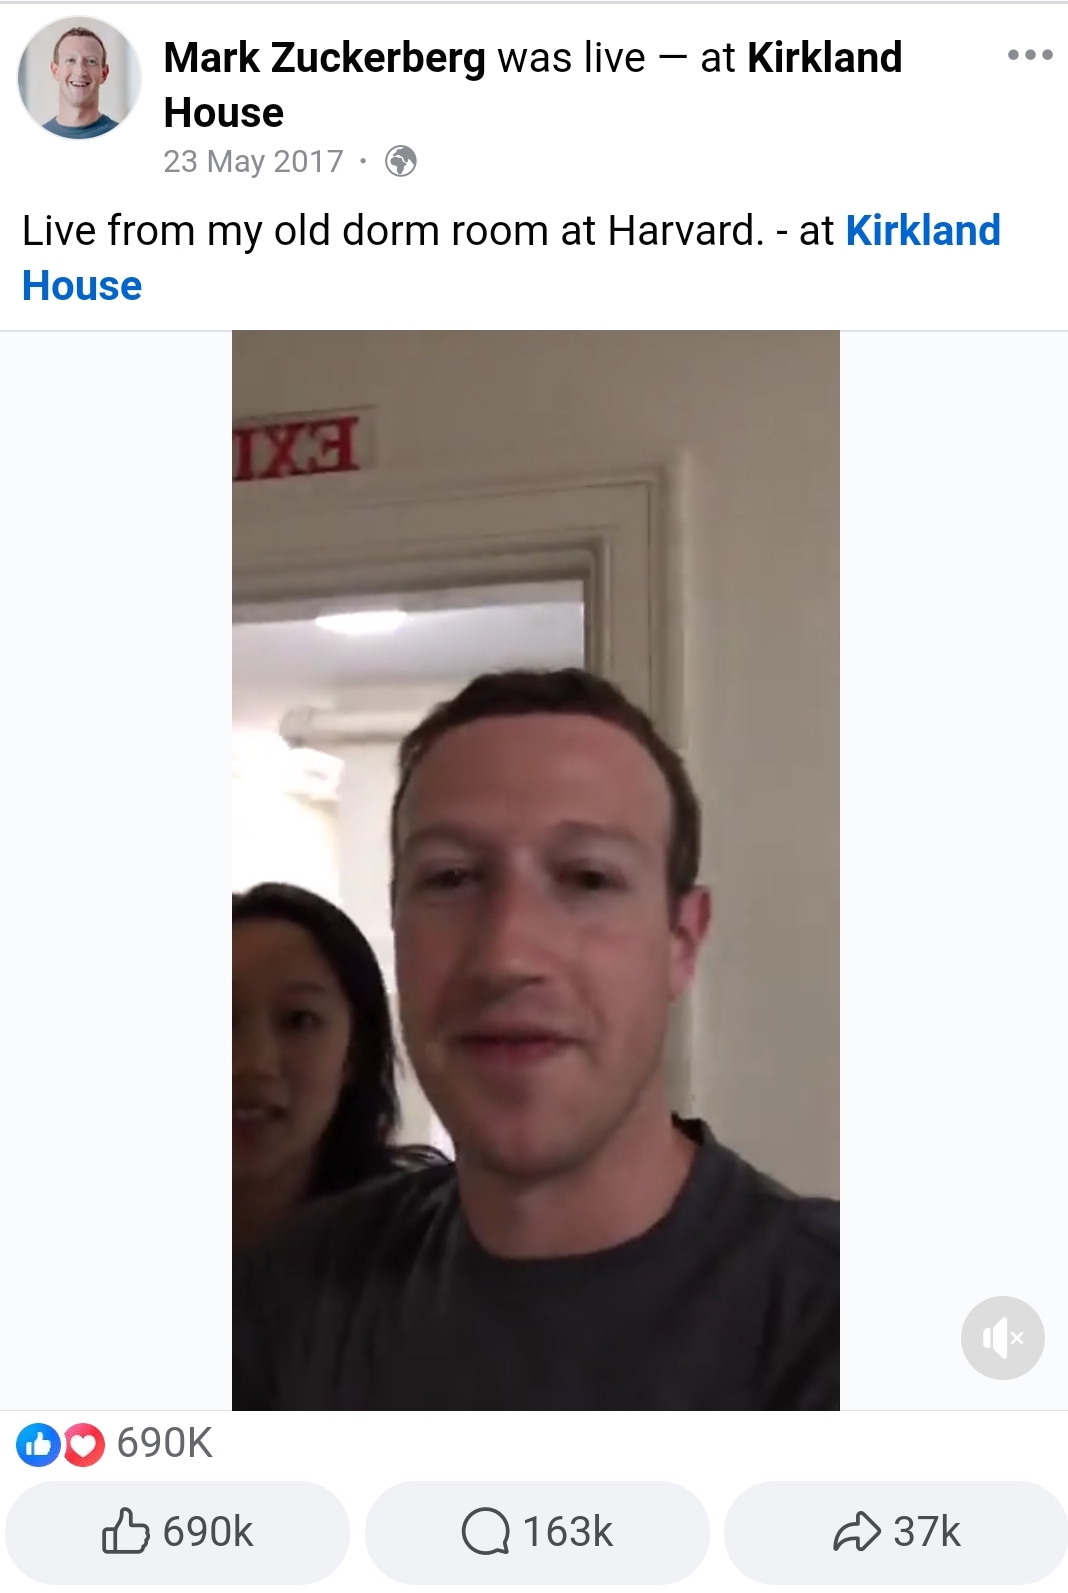 Mark Zuckerberg's Facebook live from his old dorm room at Harvard